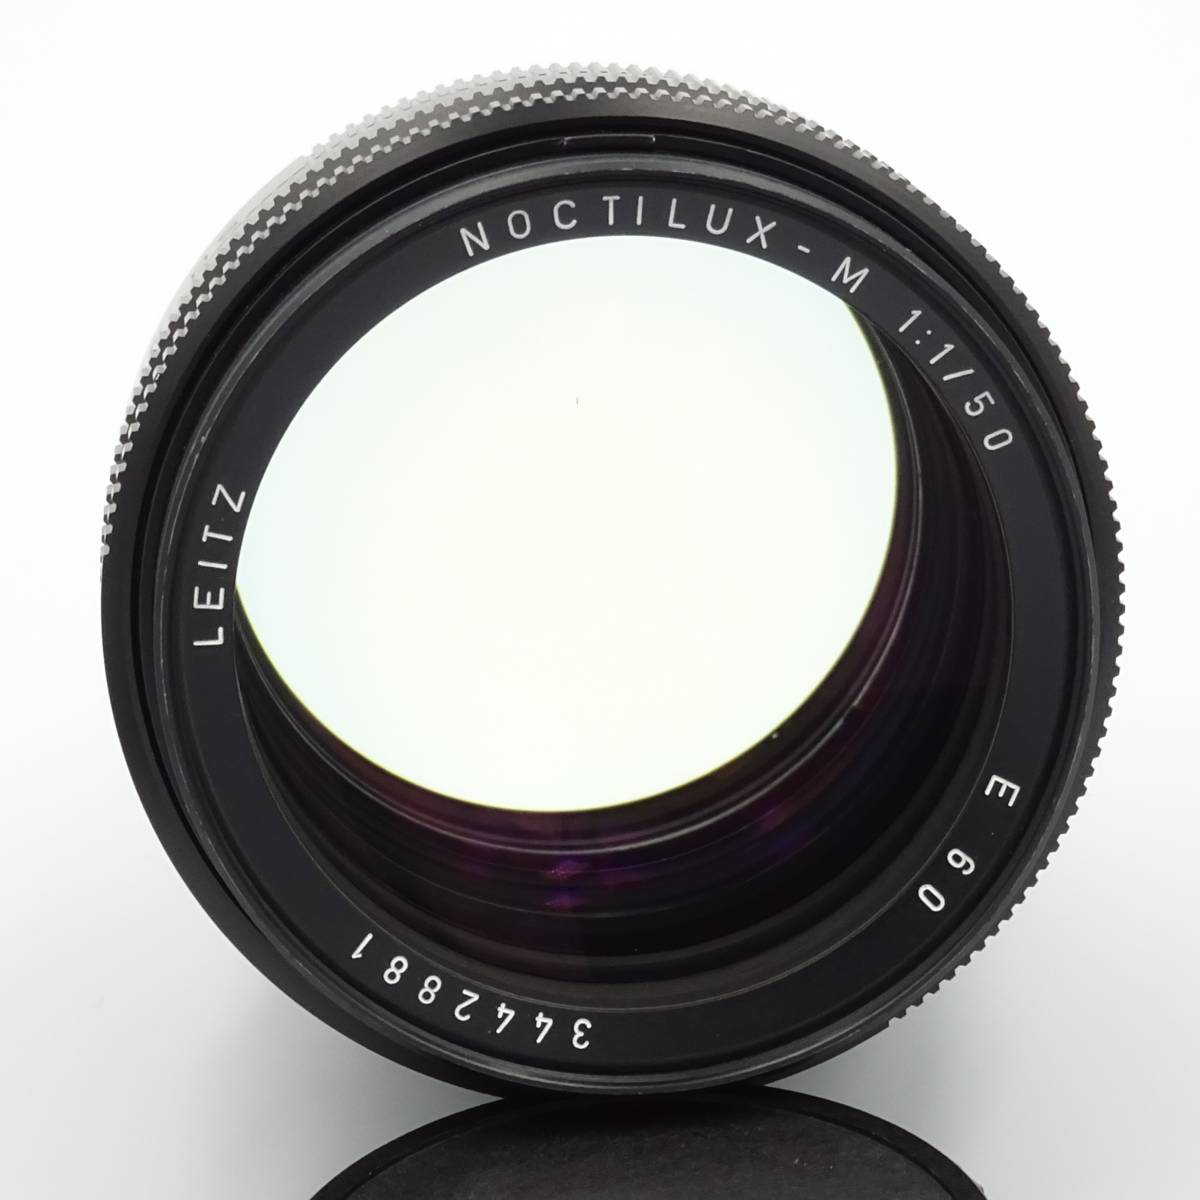 ライカ ノクチルクス LEICA Noctilux 50mm f1.0 E60（純正フィルター・フード付き）ライカMマウントレンズ フルサイズ_Cの下にチリあり。目立つのはこの1点のみ。